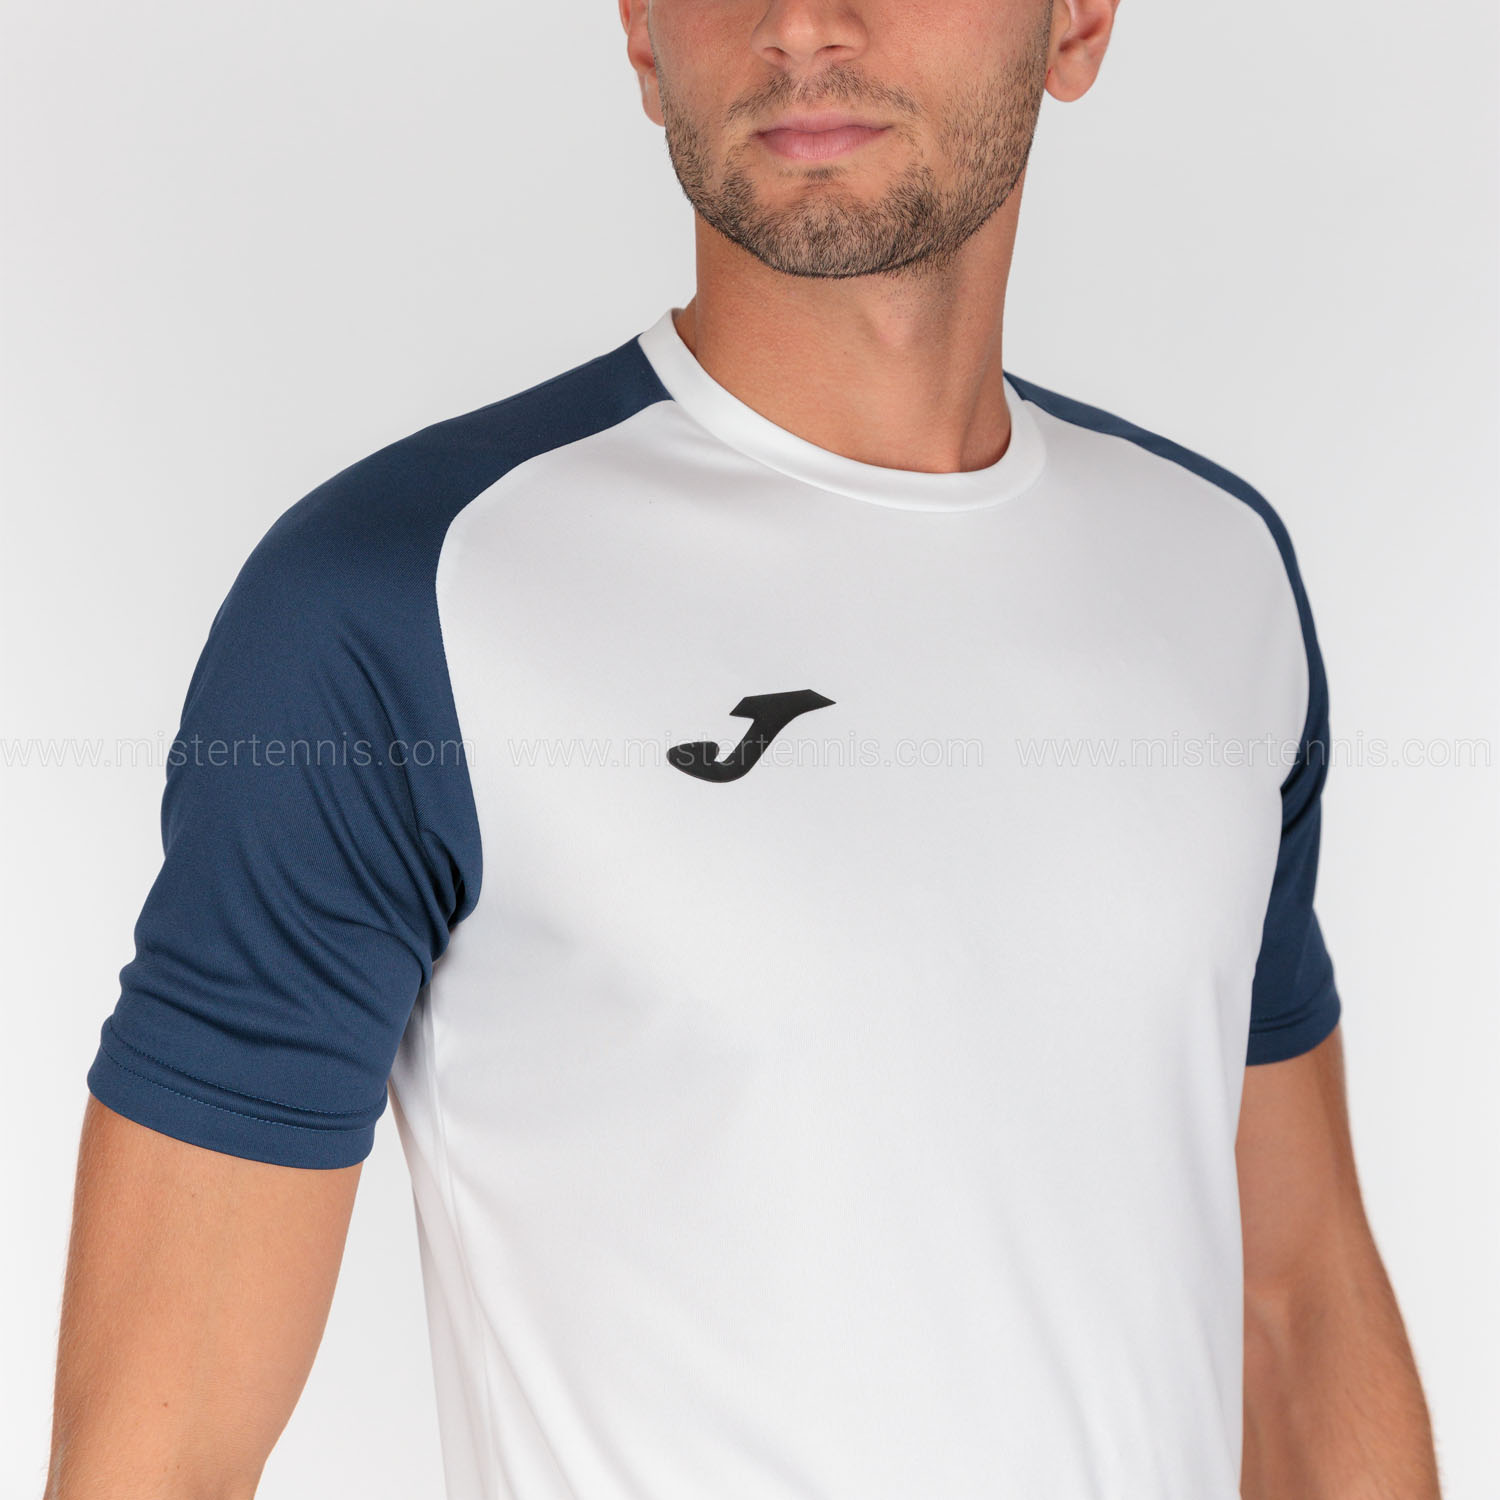 Joma Academy IV Camiseta - White/Navy